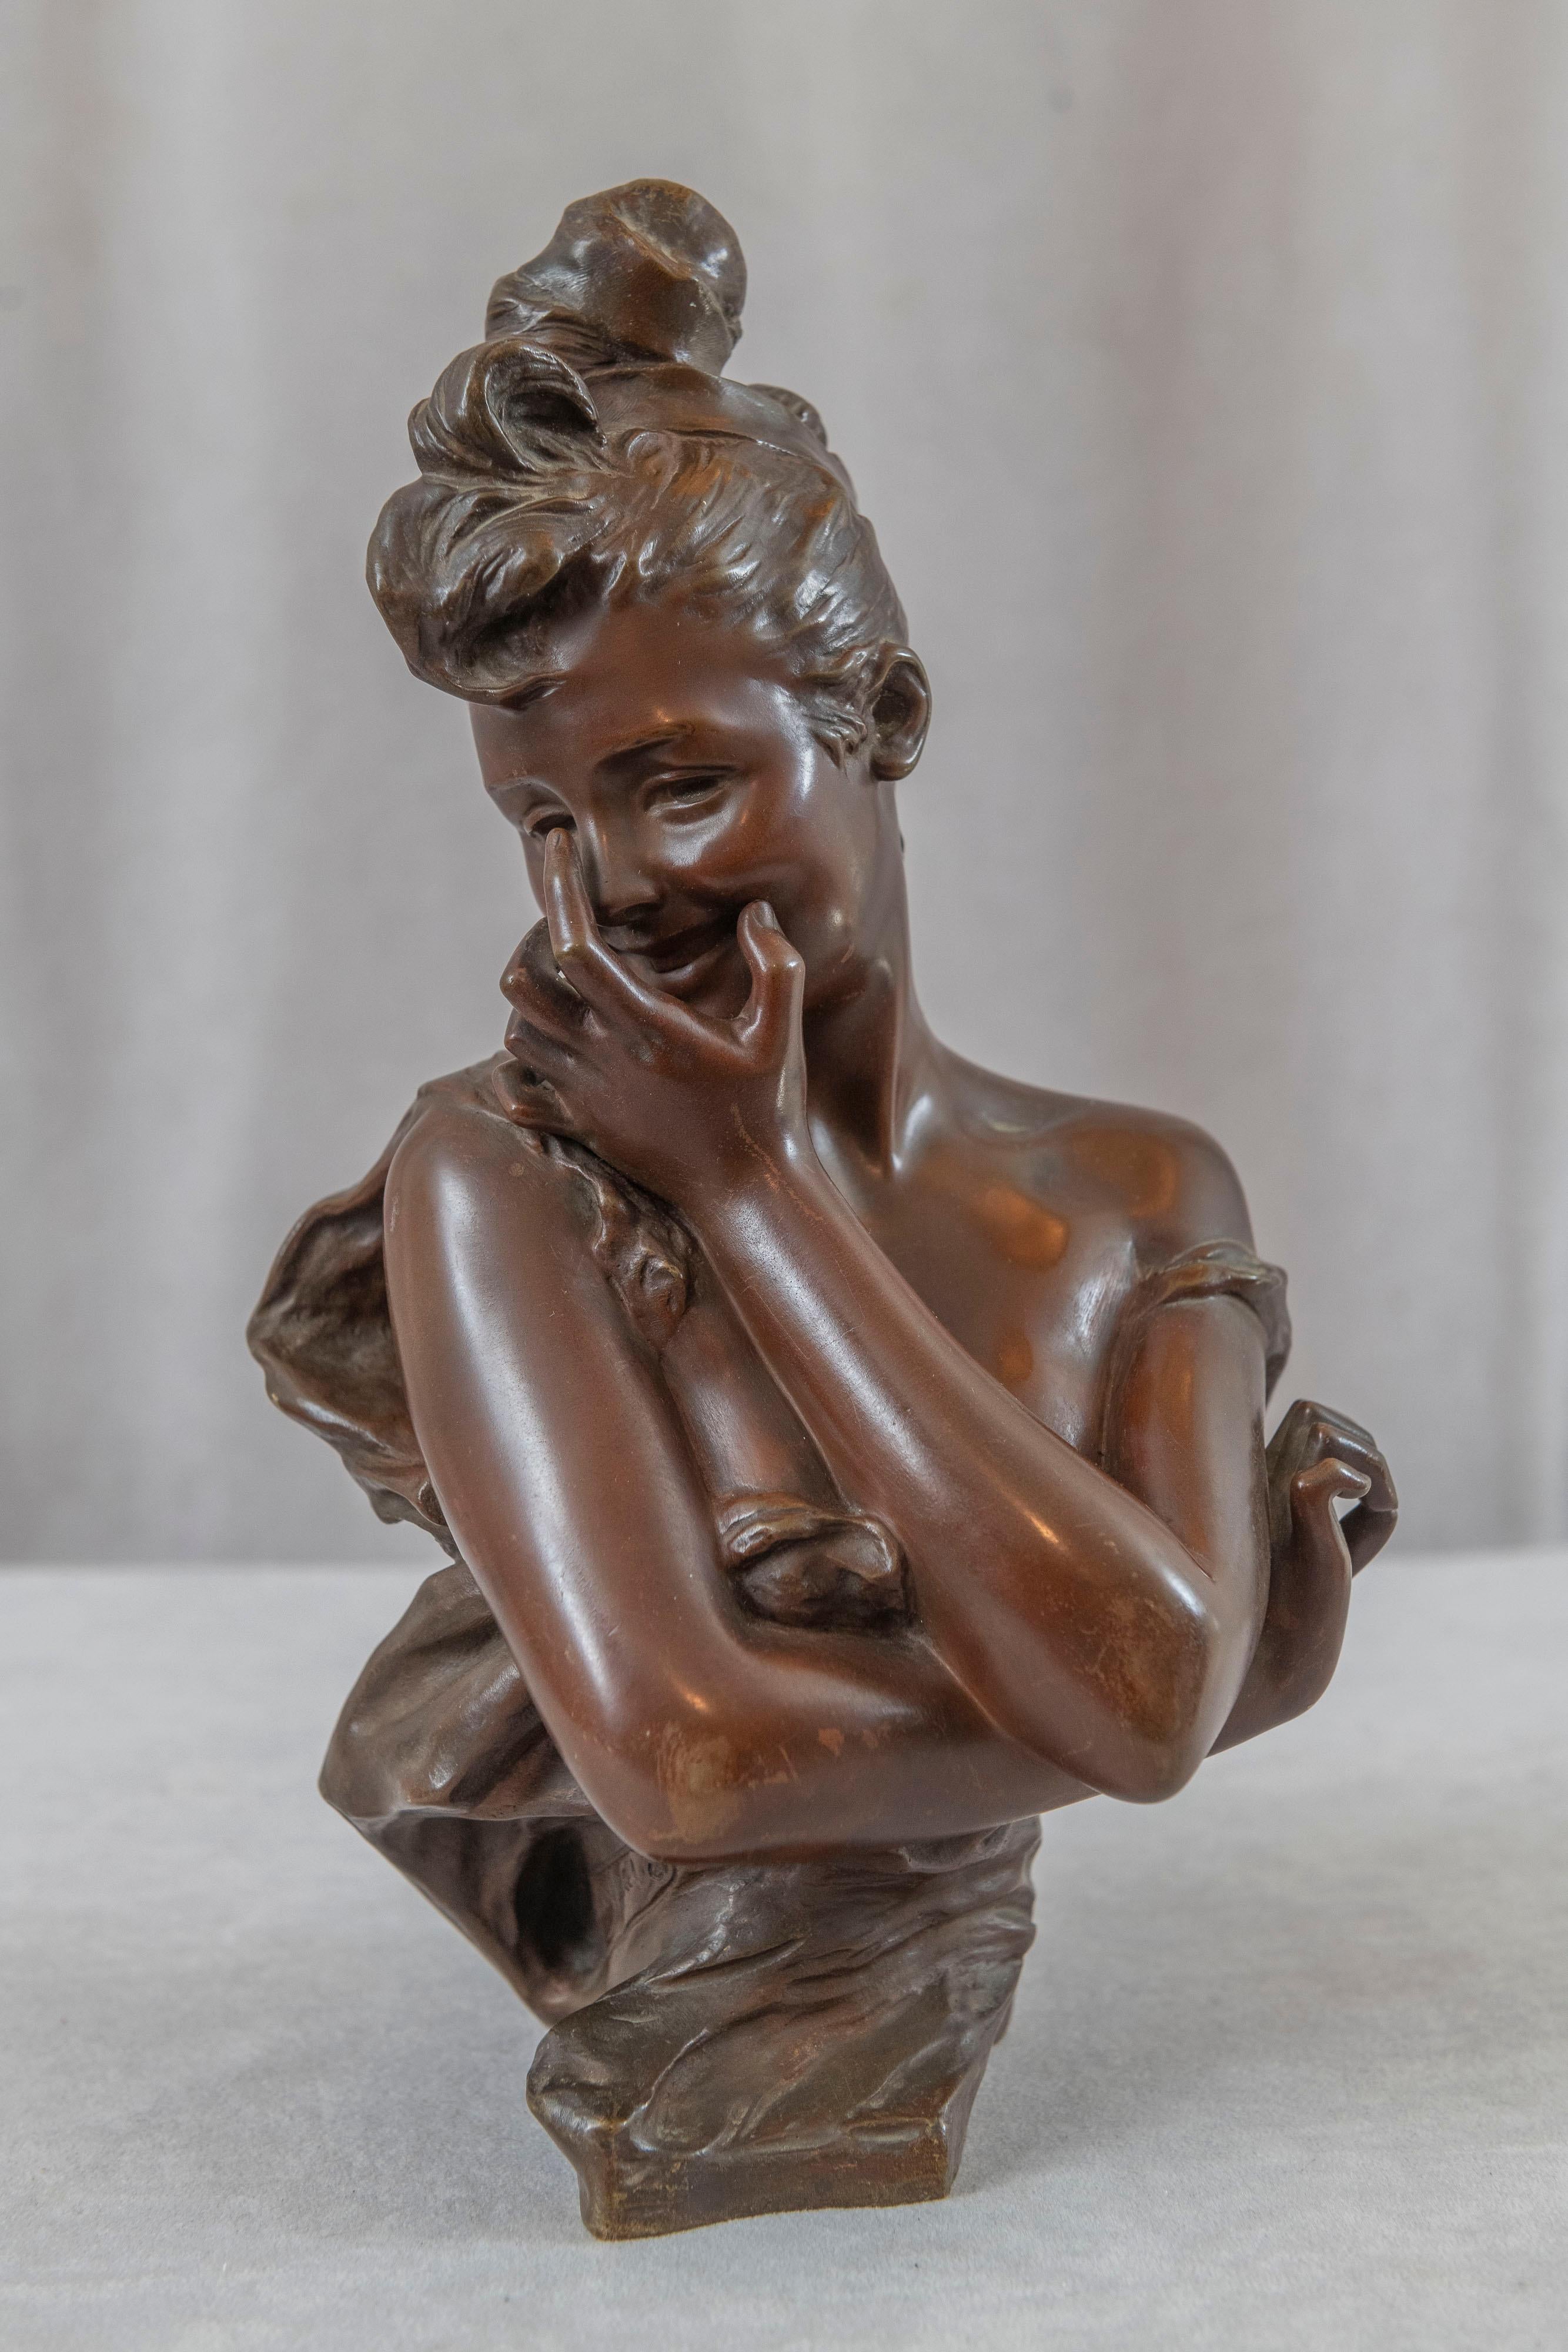  Ce succulent buste en bronze a été réalisé par l'artiste le plus en vue de son époque, Georges van der Straeten (1856-1901). Né en Belgique, il a travaillé principalement à Paris, où il a remporté la médaille d'argent à l'Exposition universelle de